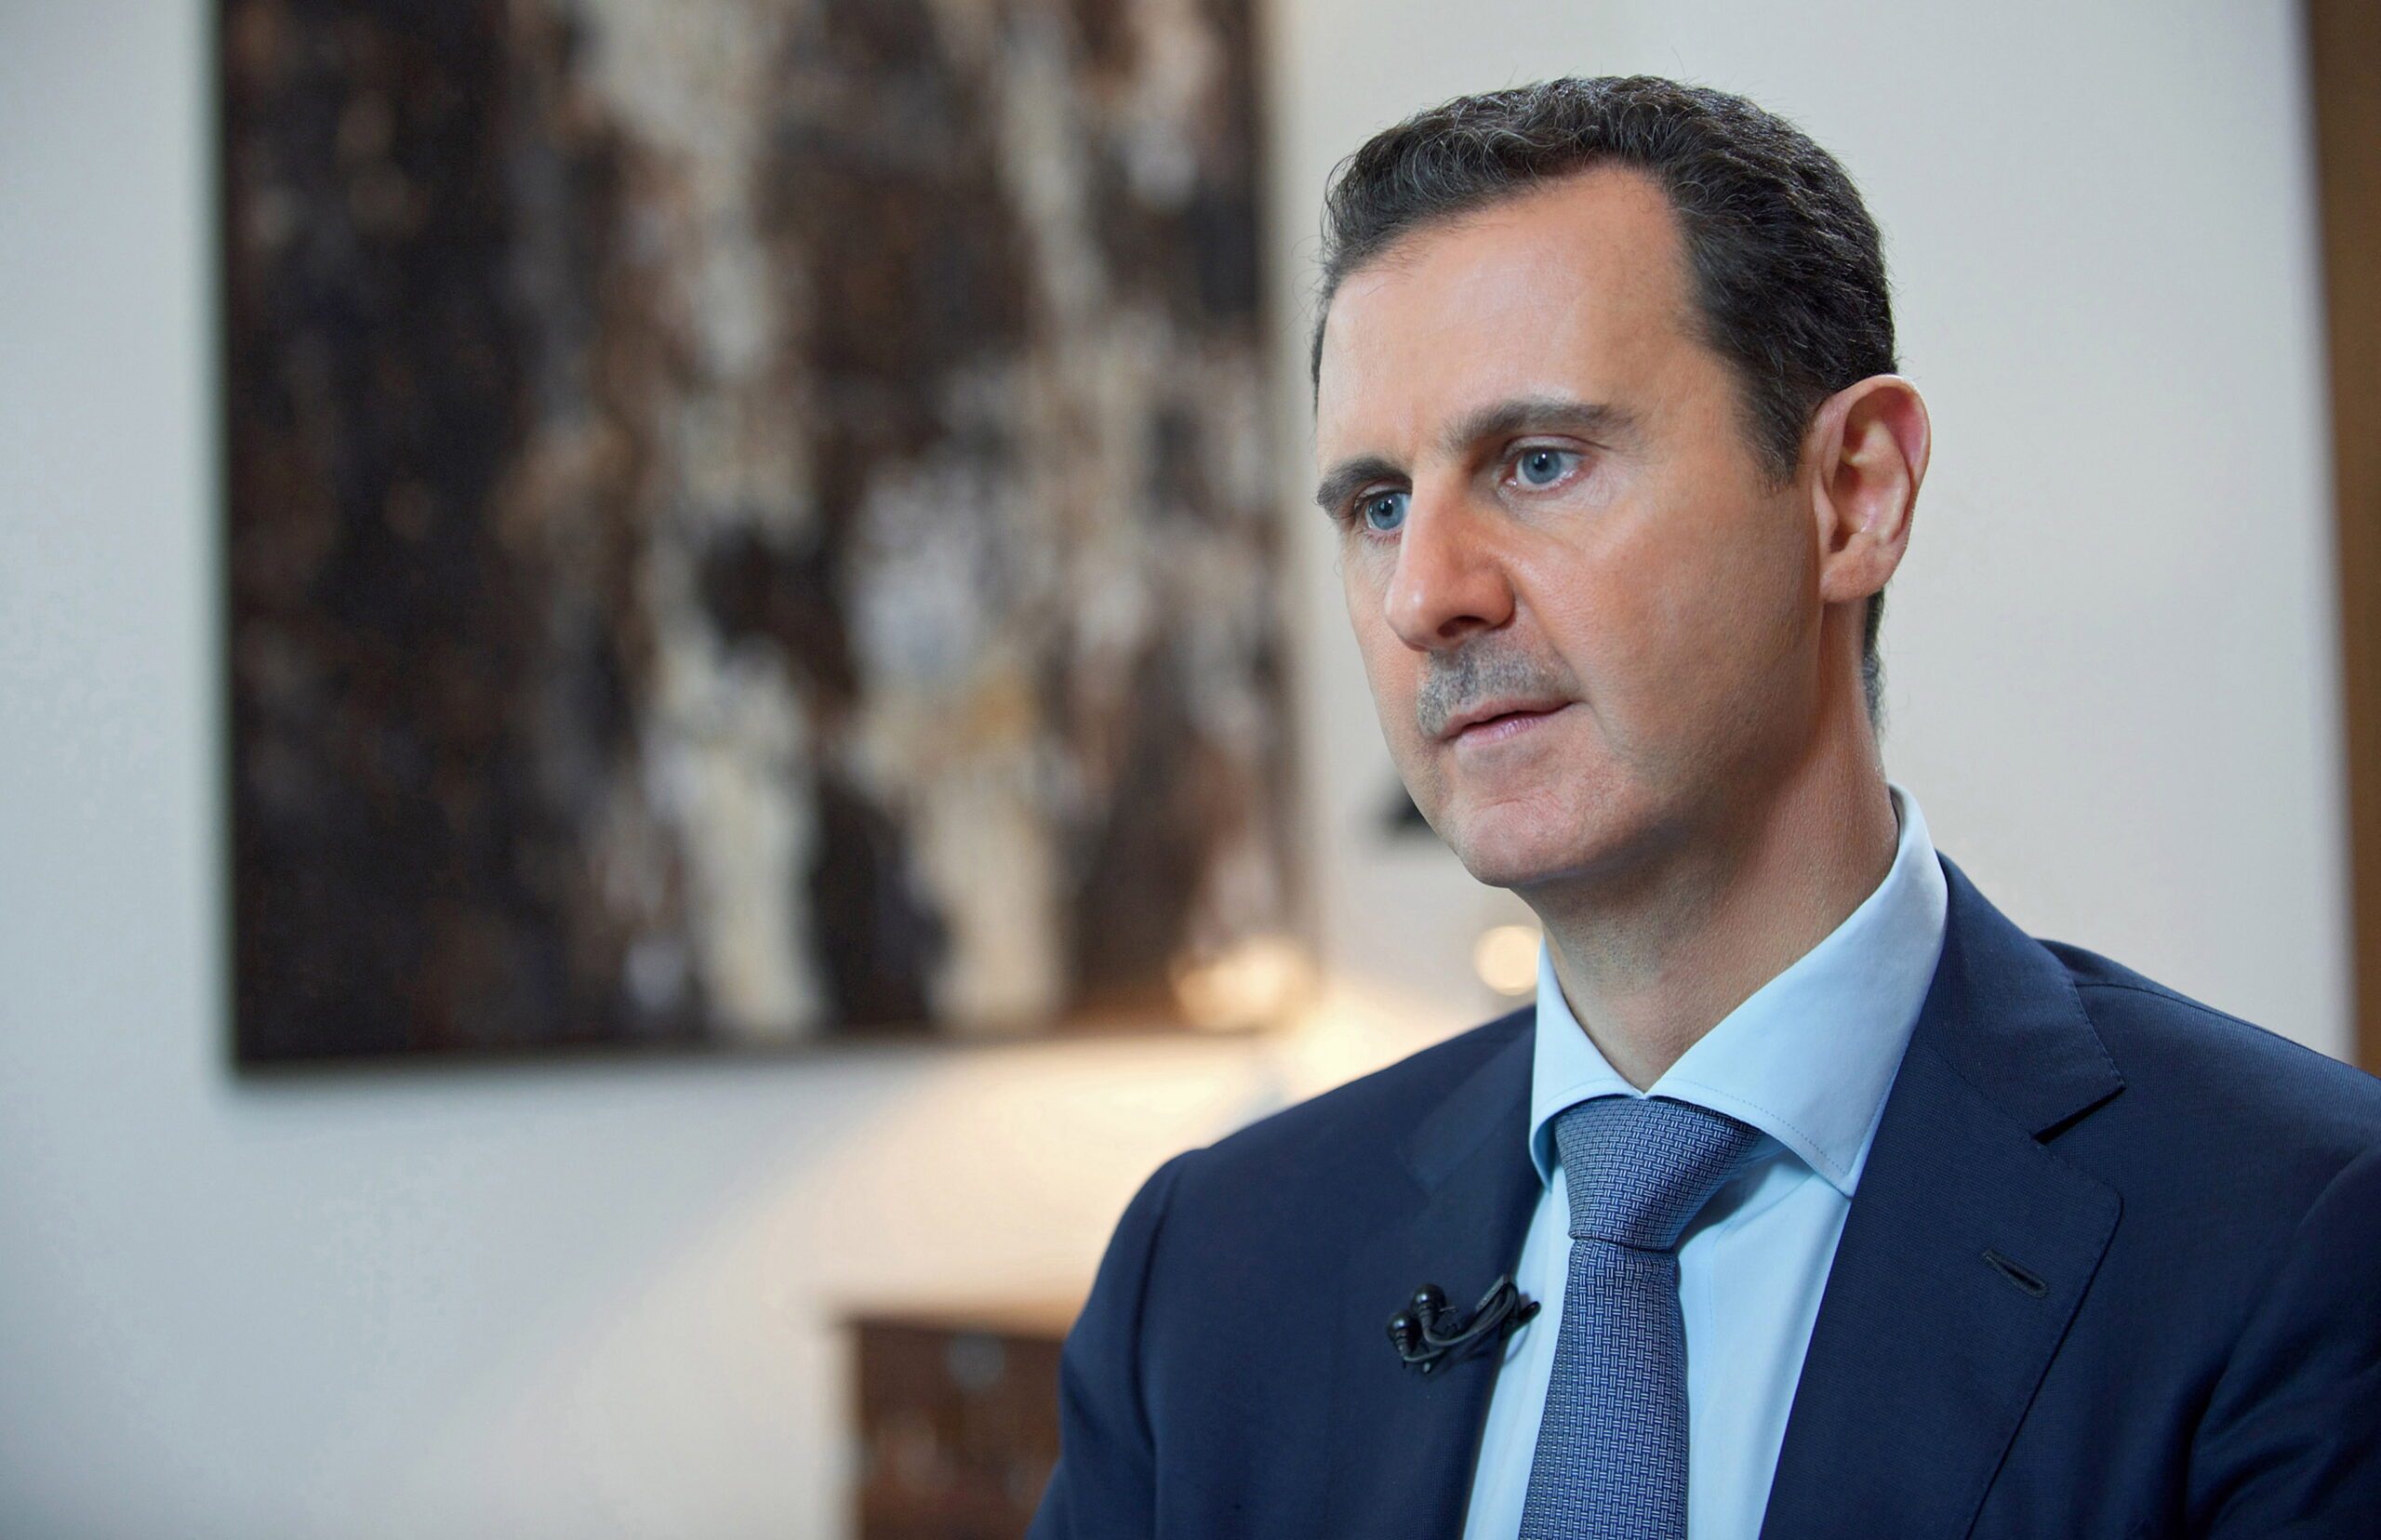 Assad insists on unity gov’t despite opposition demands